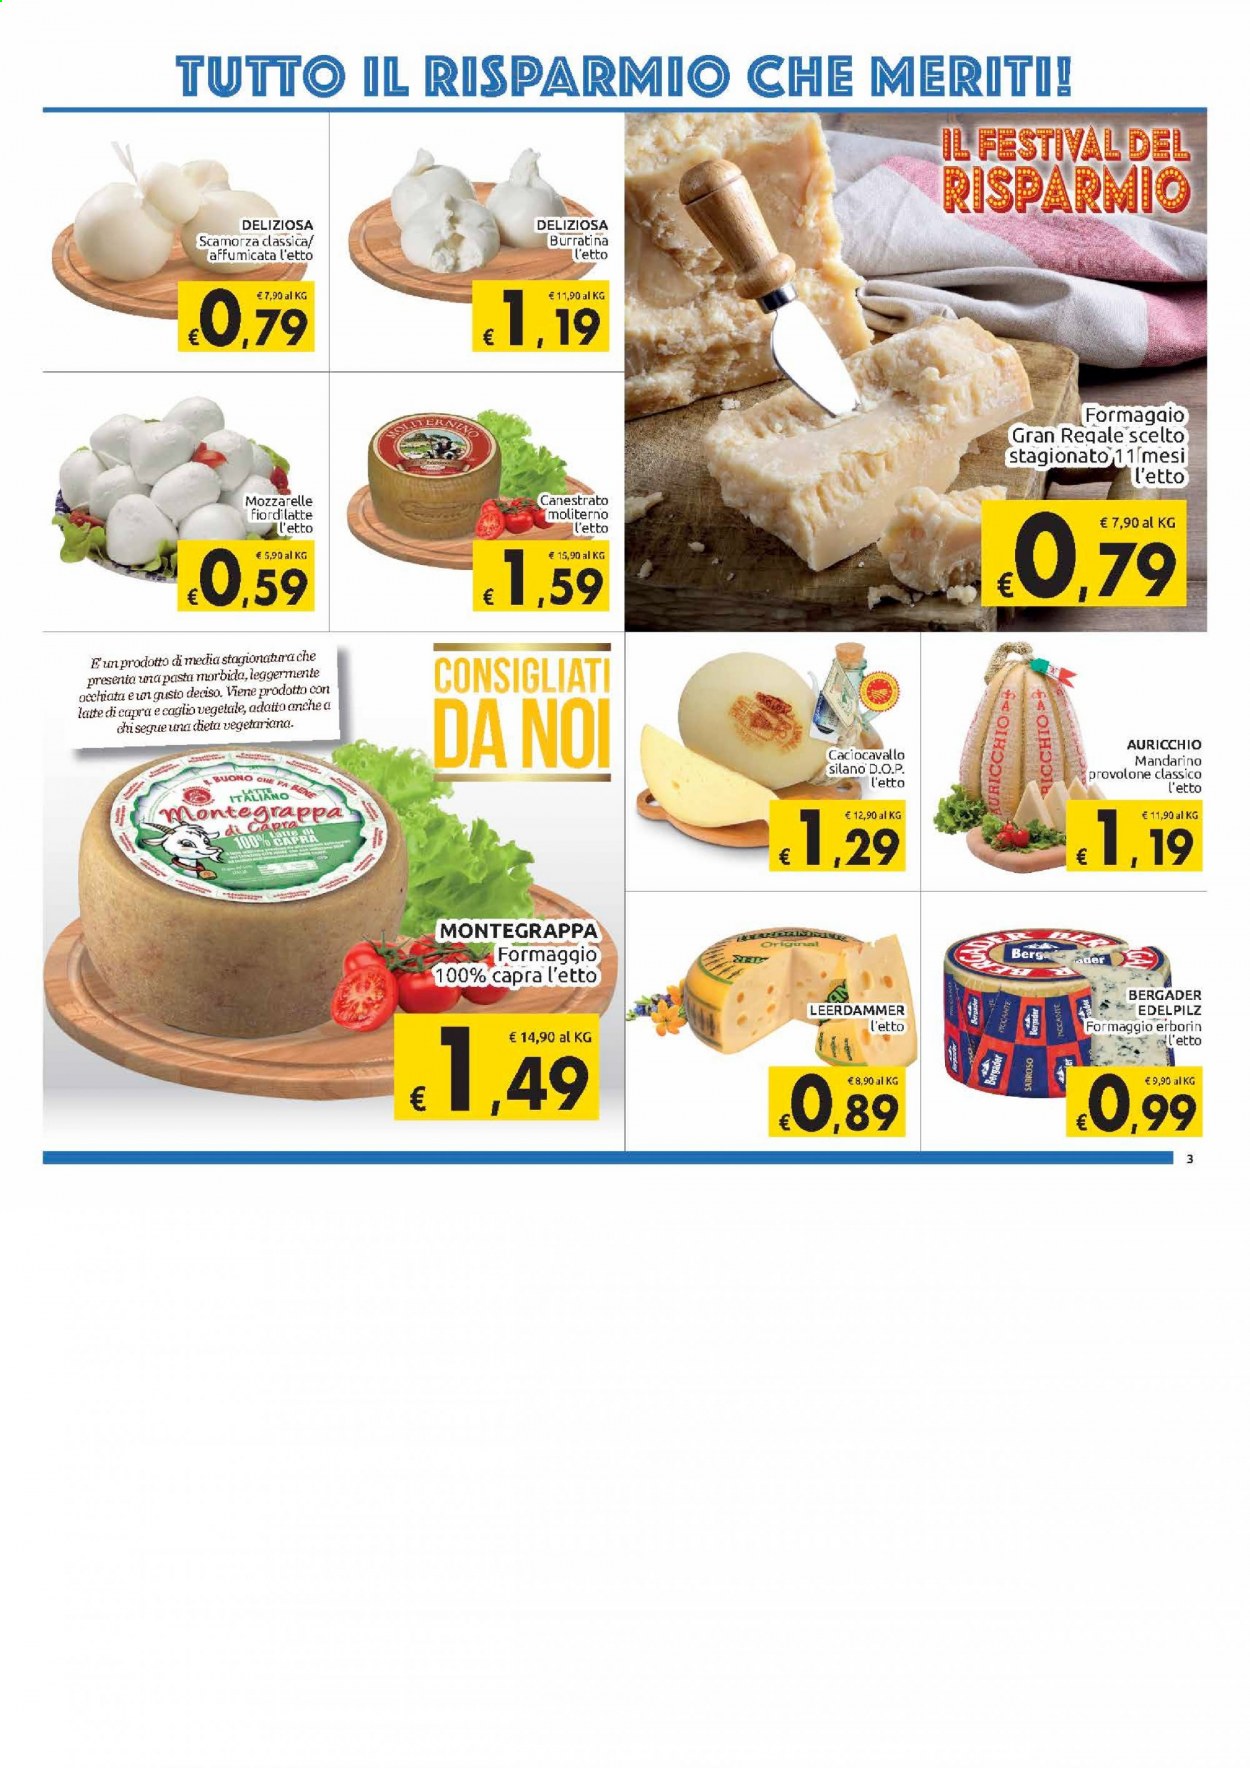 thumbnail - Volantino Carrefour - 2/3/2021 - 14/3/2021 - Prodotti in offerta - formaggio, Leerdammer, caciocavallo, canestrato, Fior di Latte, provolone, scamorza, latte, pasta. Pagina 3.